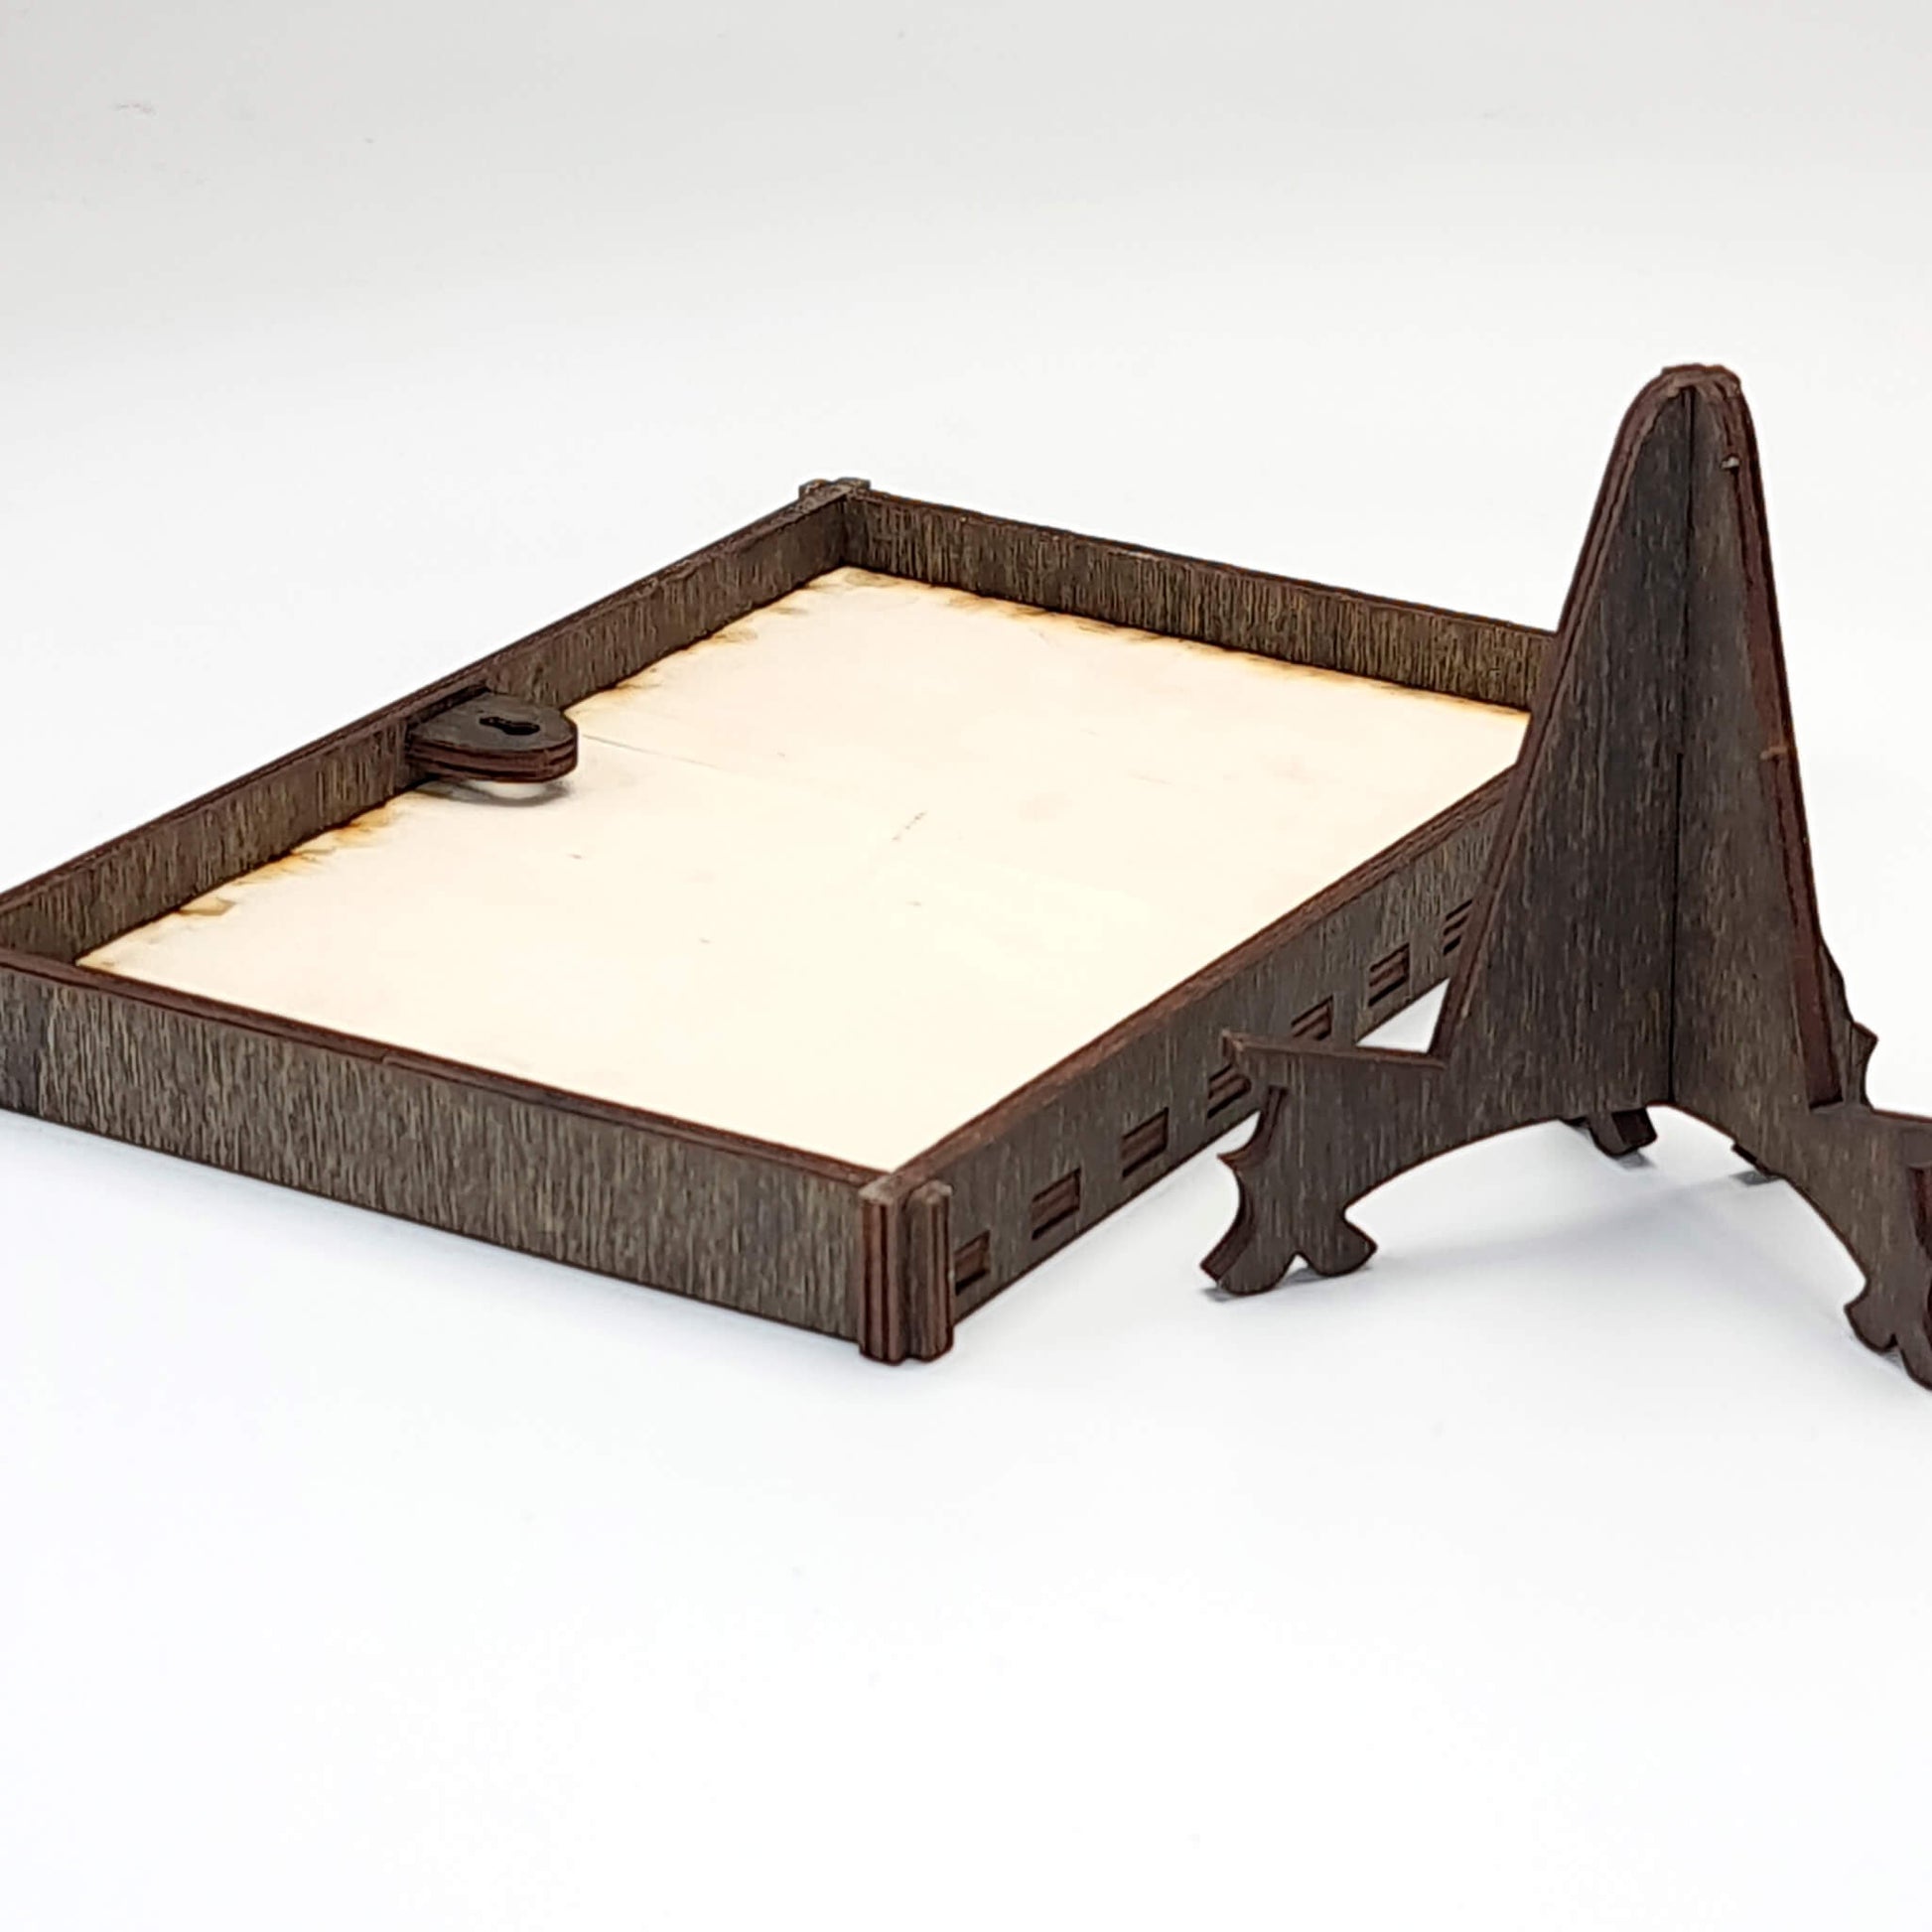 Foto auf Holz gedruckt, mit edlem Rahmen und Ständer, Querformat, 3 Größen - Nanino Design Onlineshop -